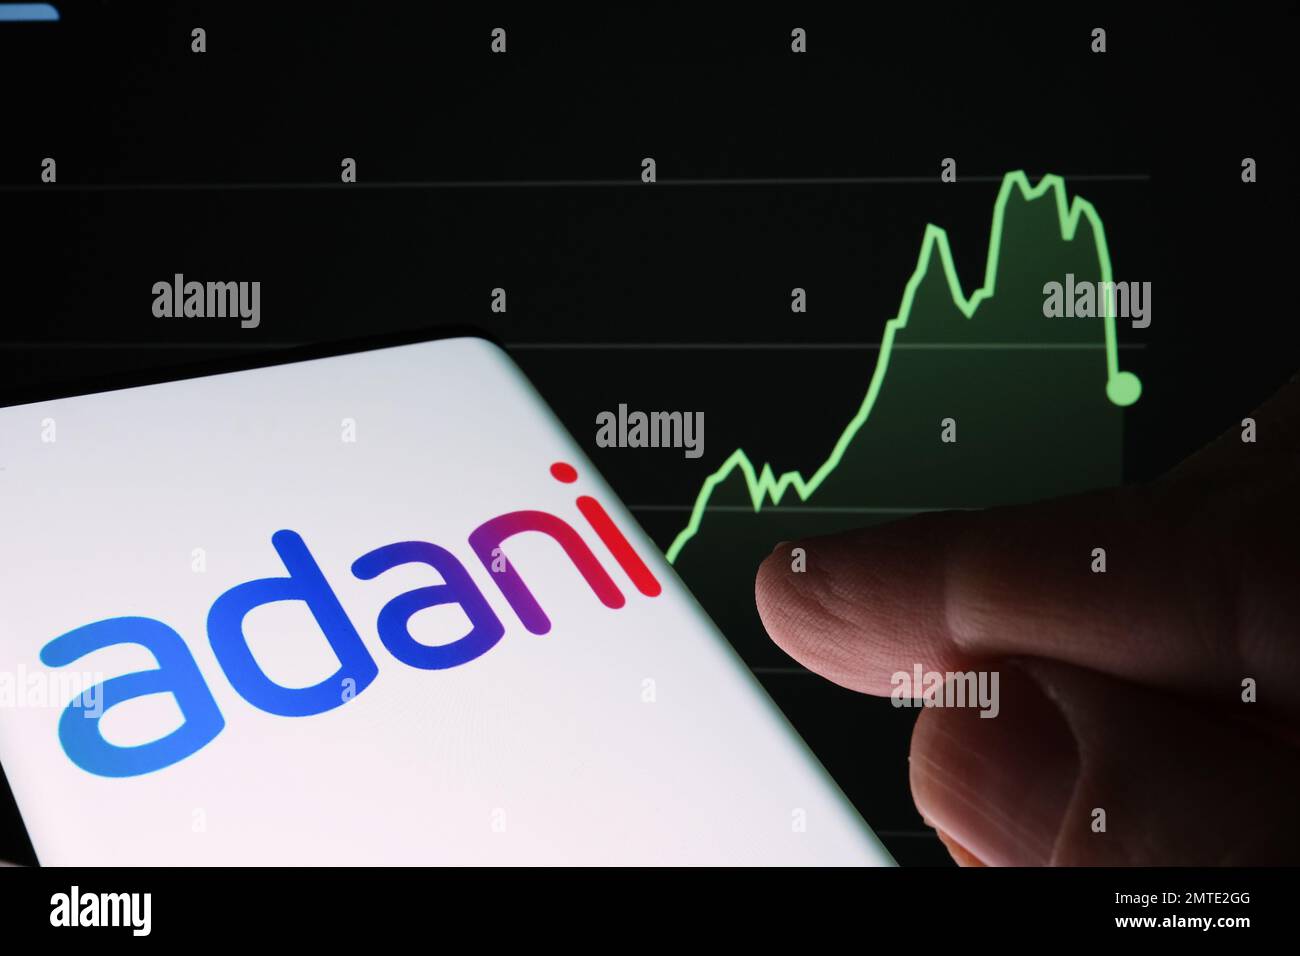 Le logo du groupe Adani est visible sur l'écran du smartphone et le graphique de baisse du prix des actions de la société est visible sur fond flou. Graphique de stock réel pour une année Banque D'Images